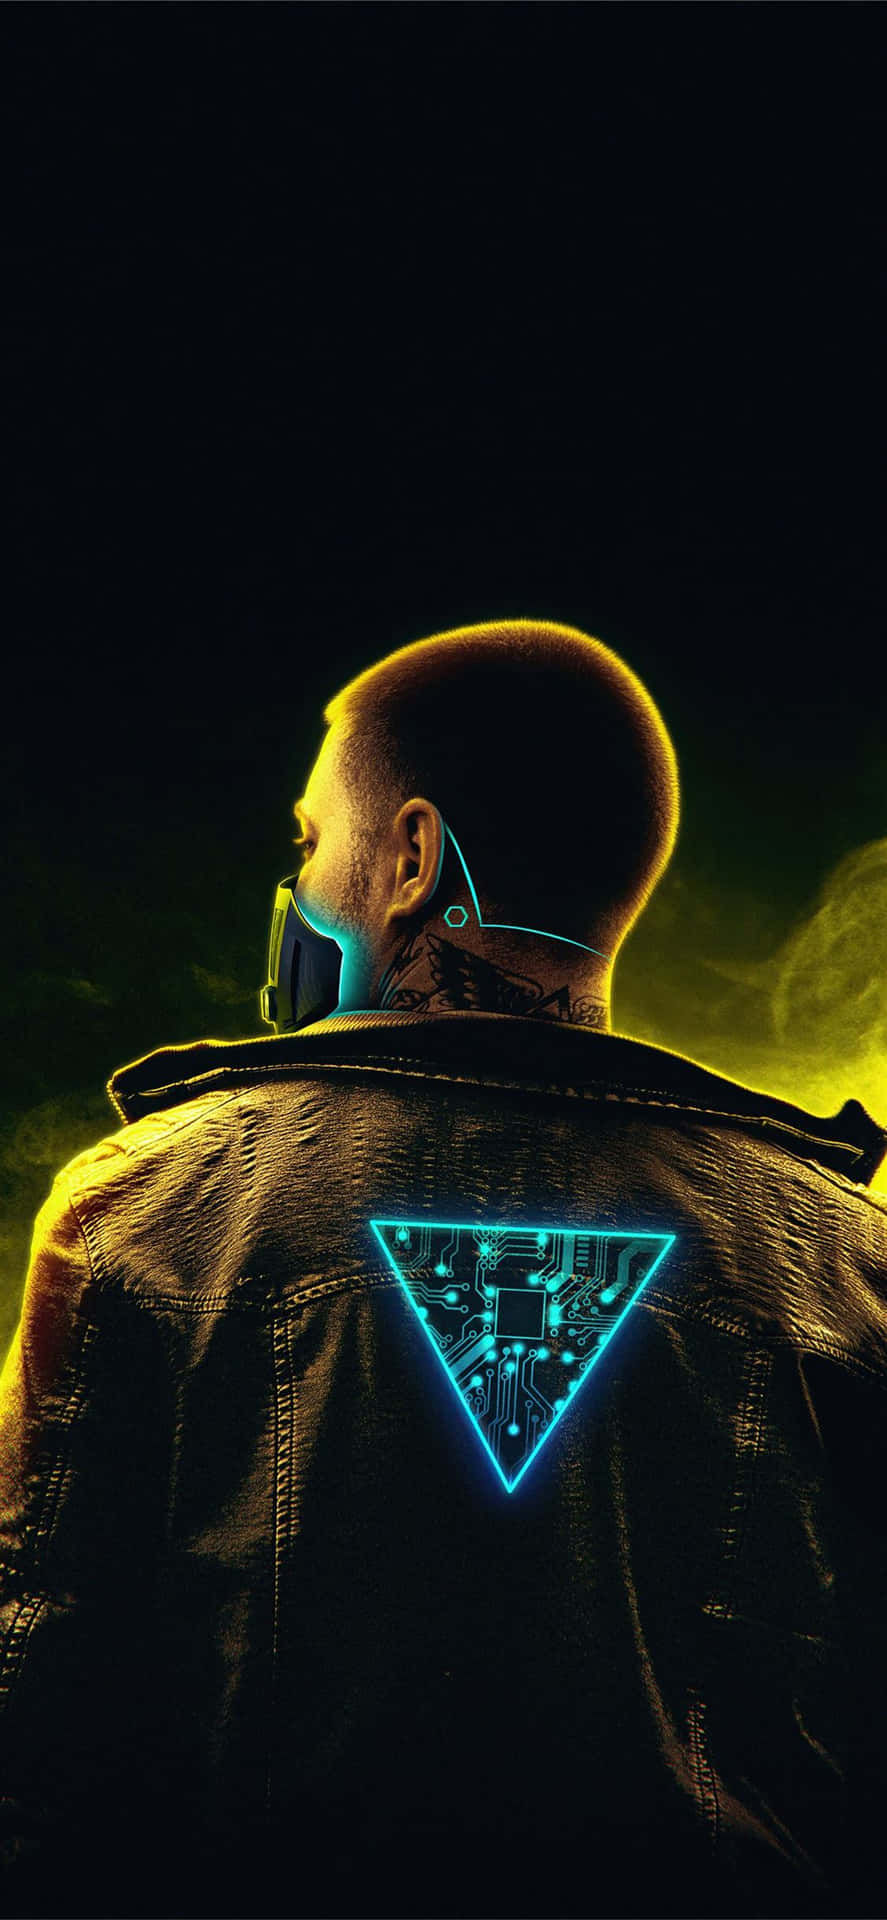 Iphonex Bakgrundsbild Med Cyberpunk 2077, En Cyborg Man Och Triangulär Belysning.